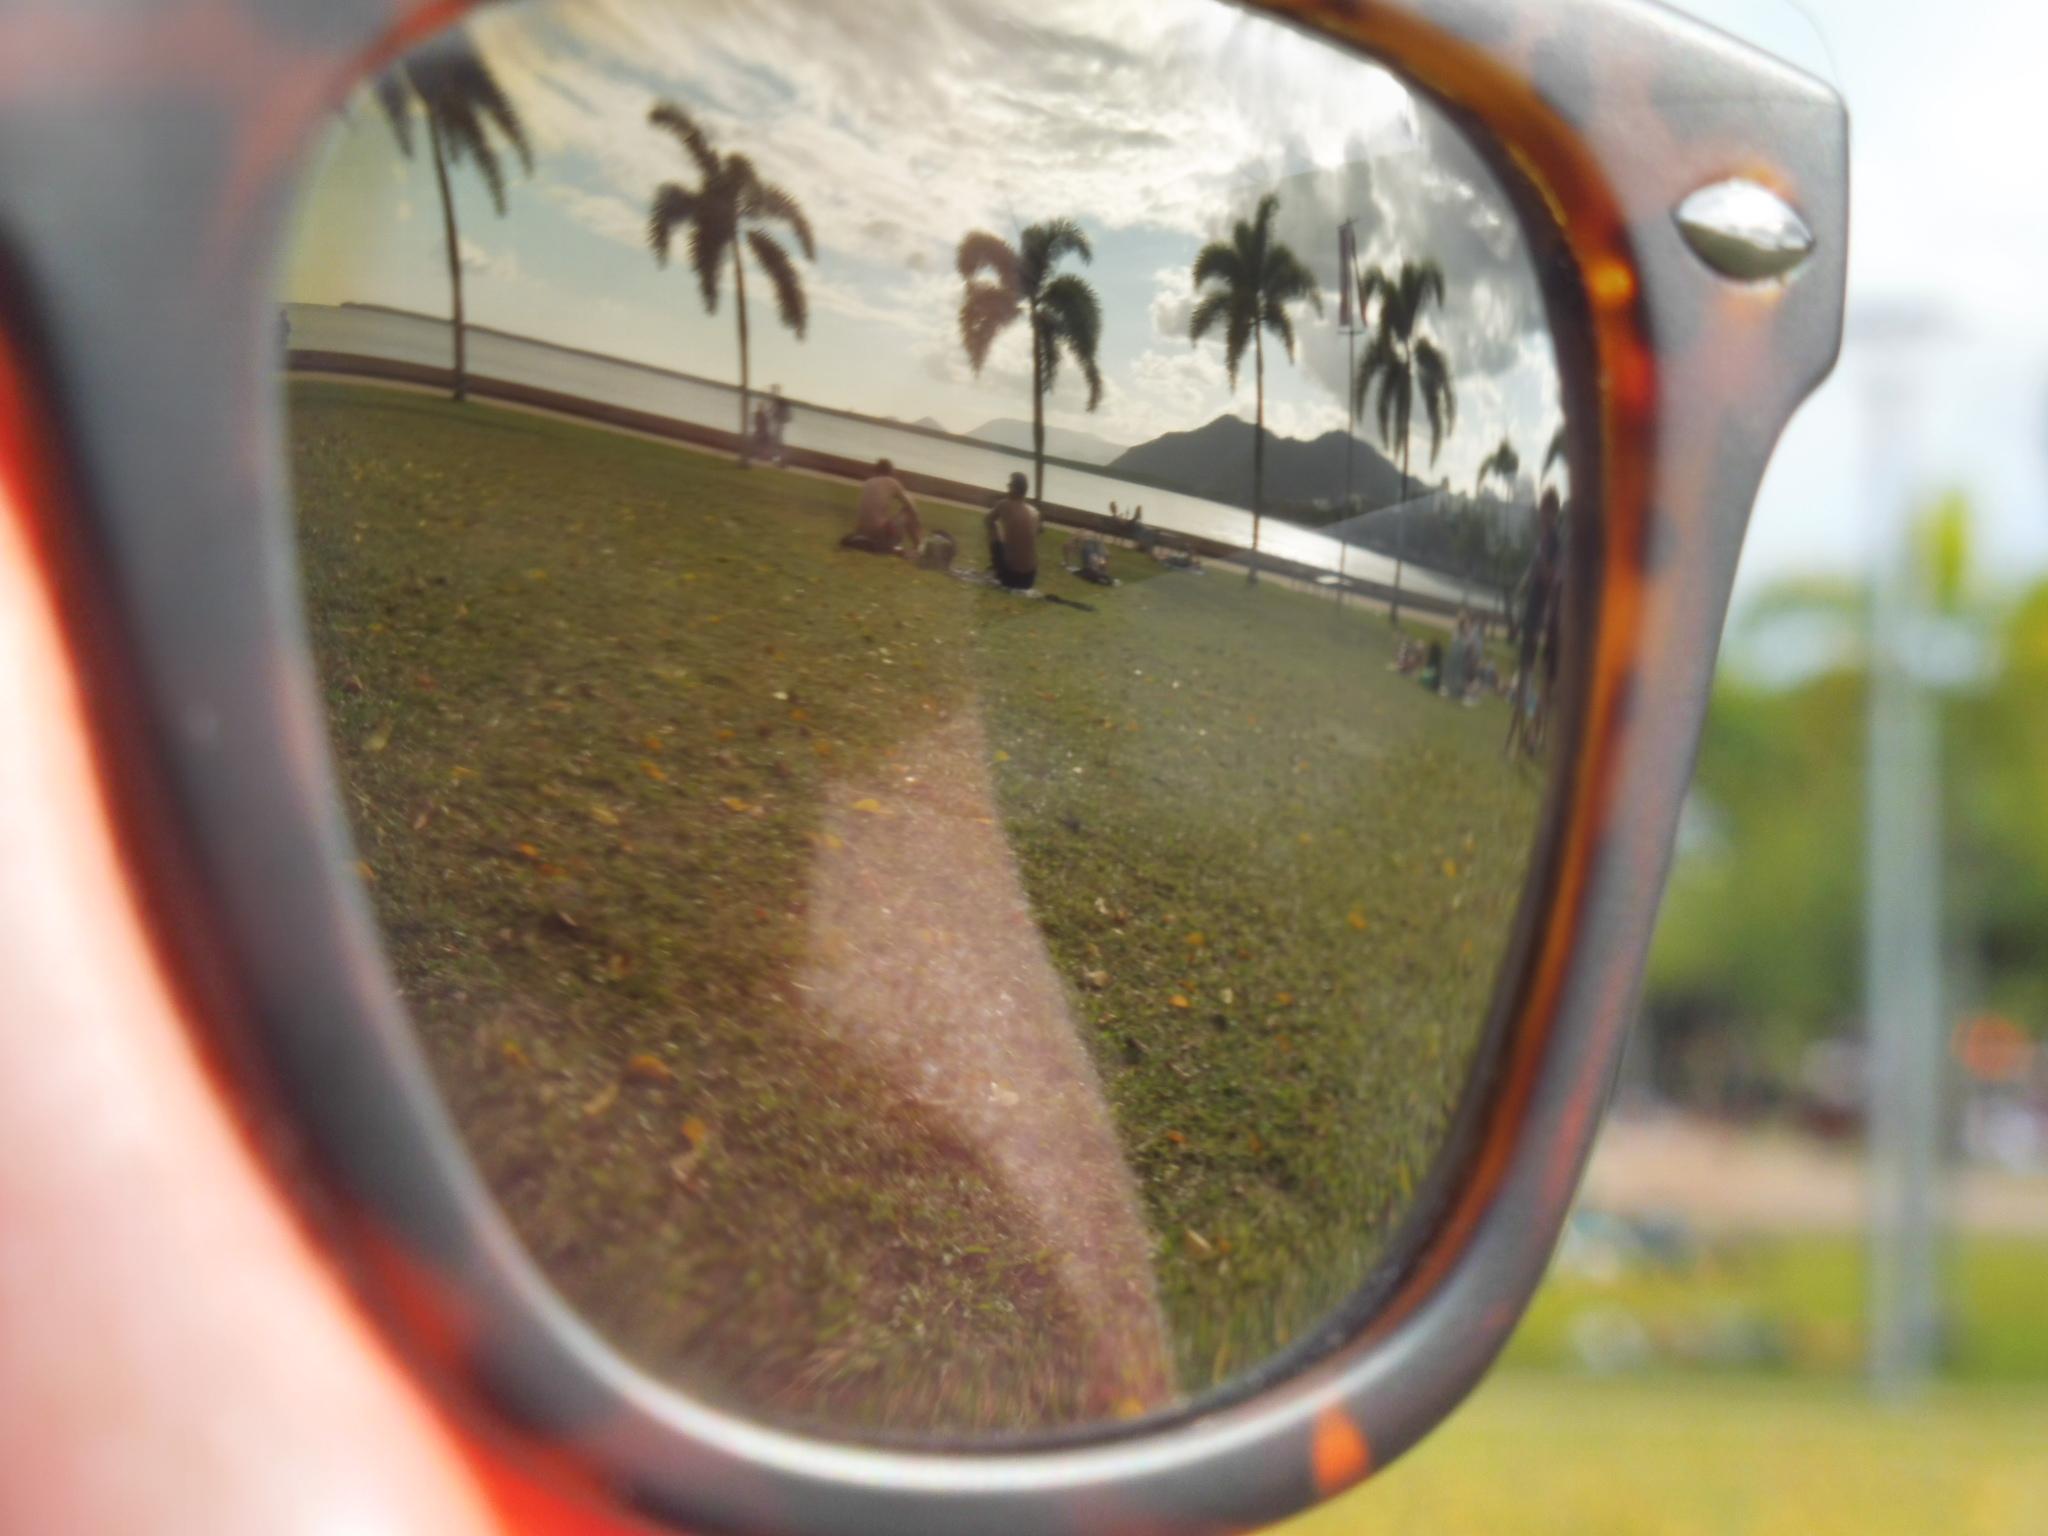 Sonnenbrille ist ein Muss
#summerstyle #palmenallee #sonnenscheinundwolkenmeer
